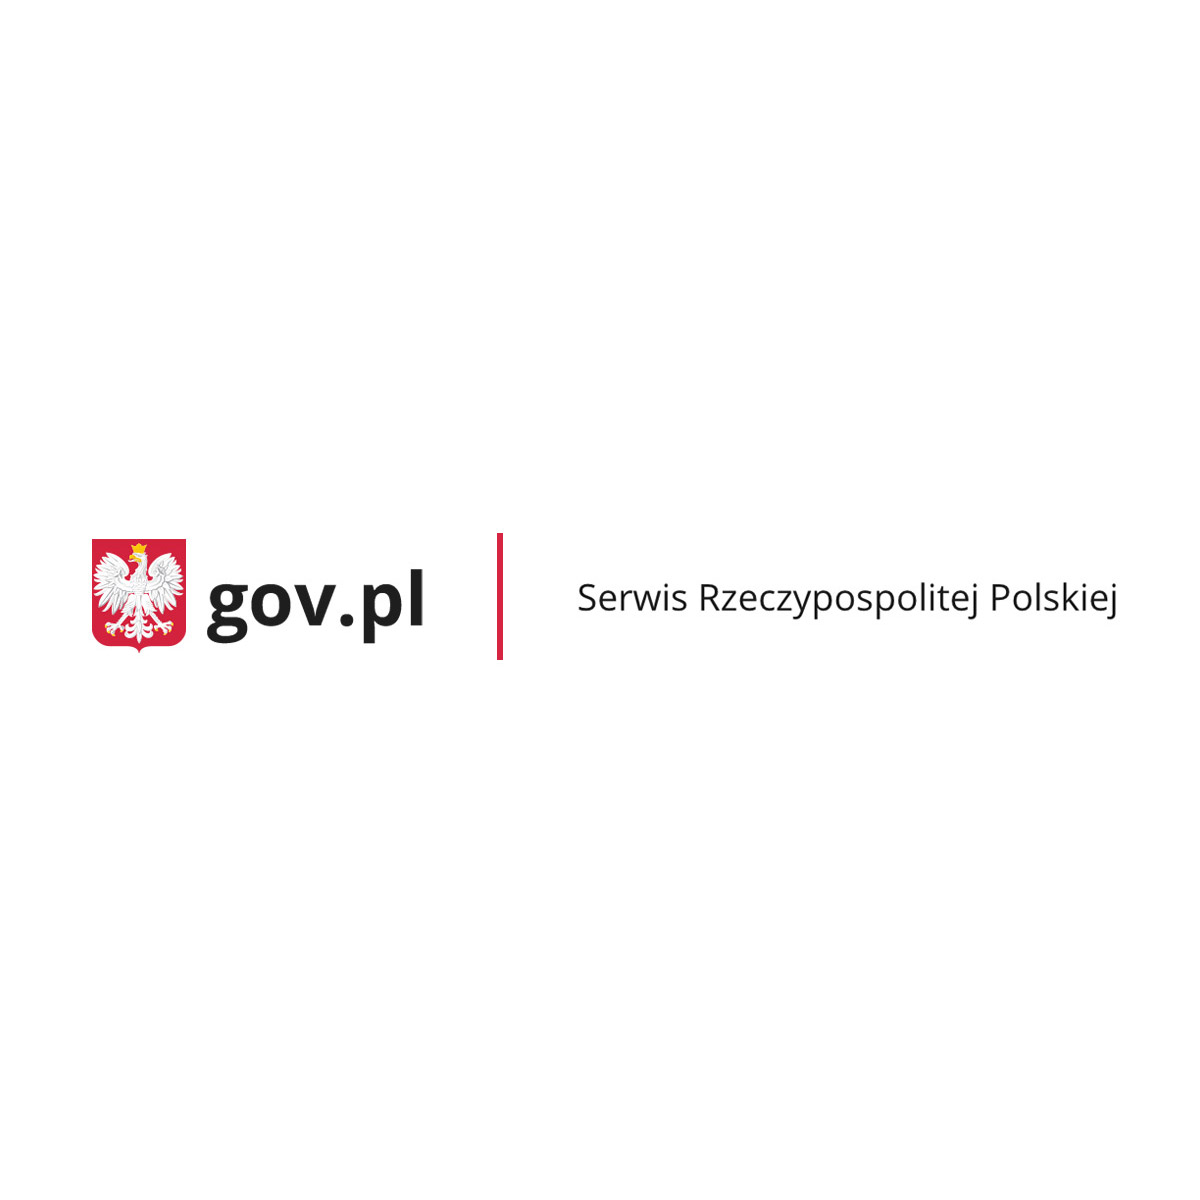 Indywidualny program lub tok nauki - Ministerstwo Edukacji i Nauki - Portal Gov.pl